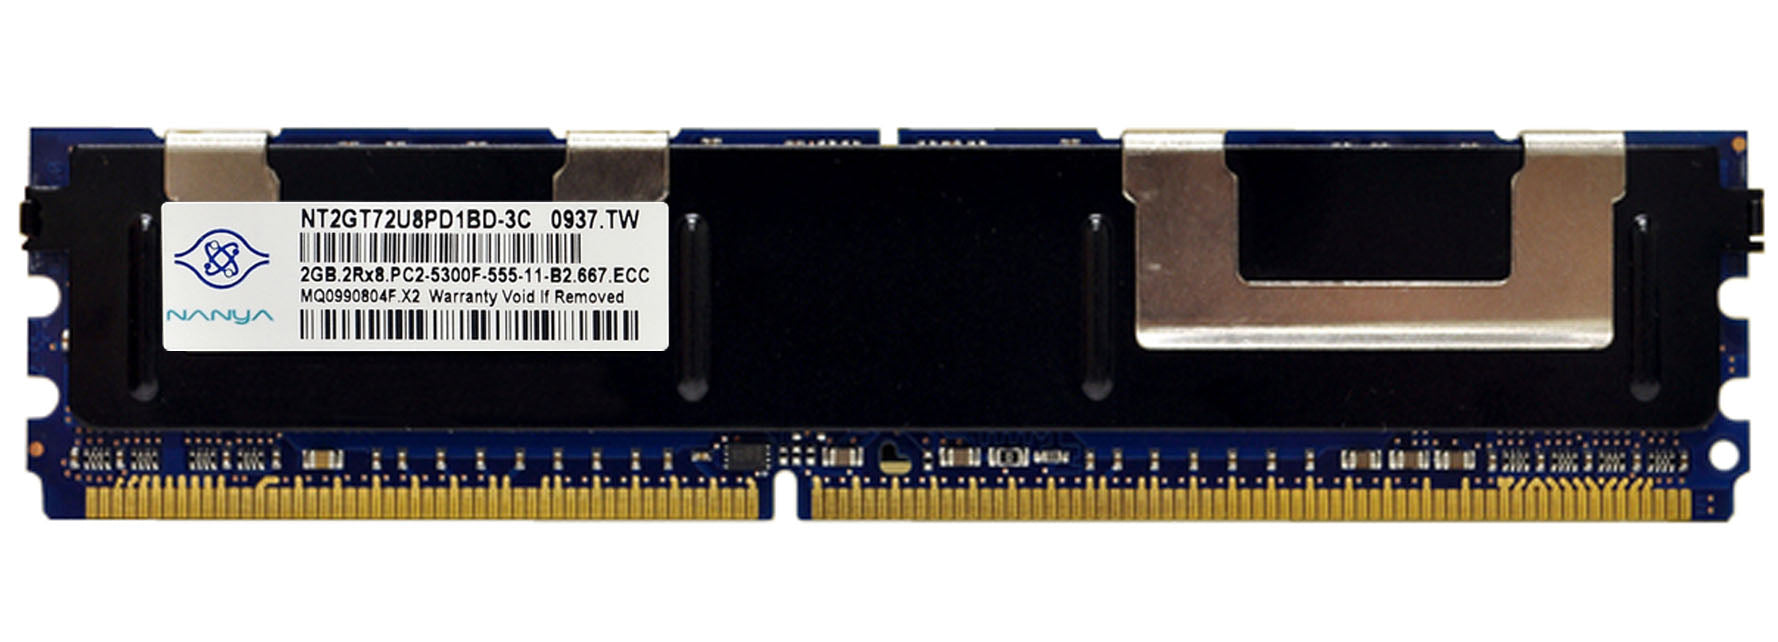 NT2GT72U8PD1BD-3C Nanya 2GB PC2-5300 DDR2-667MHz ECC Fully Buffered CL5 240-Pin